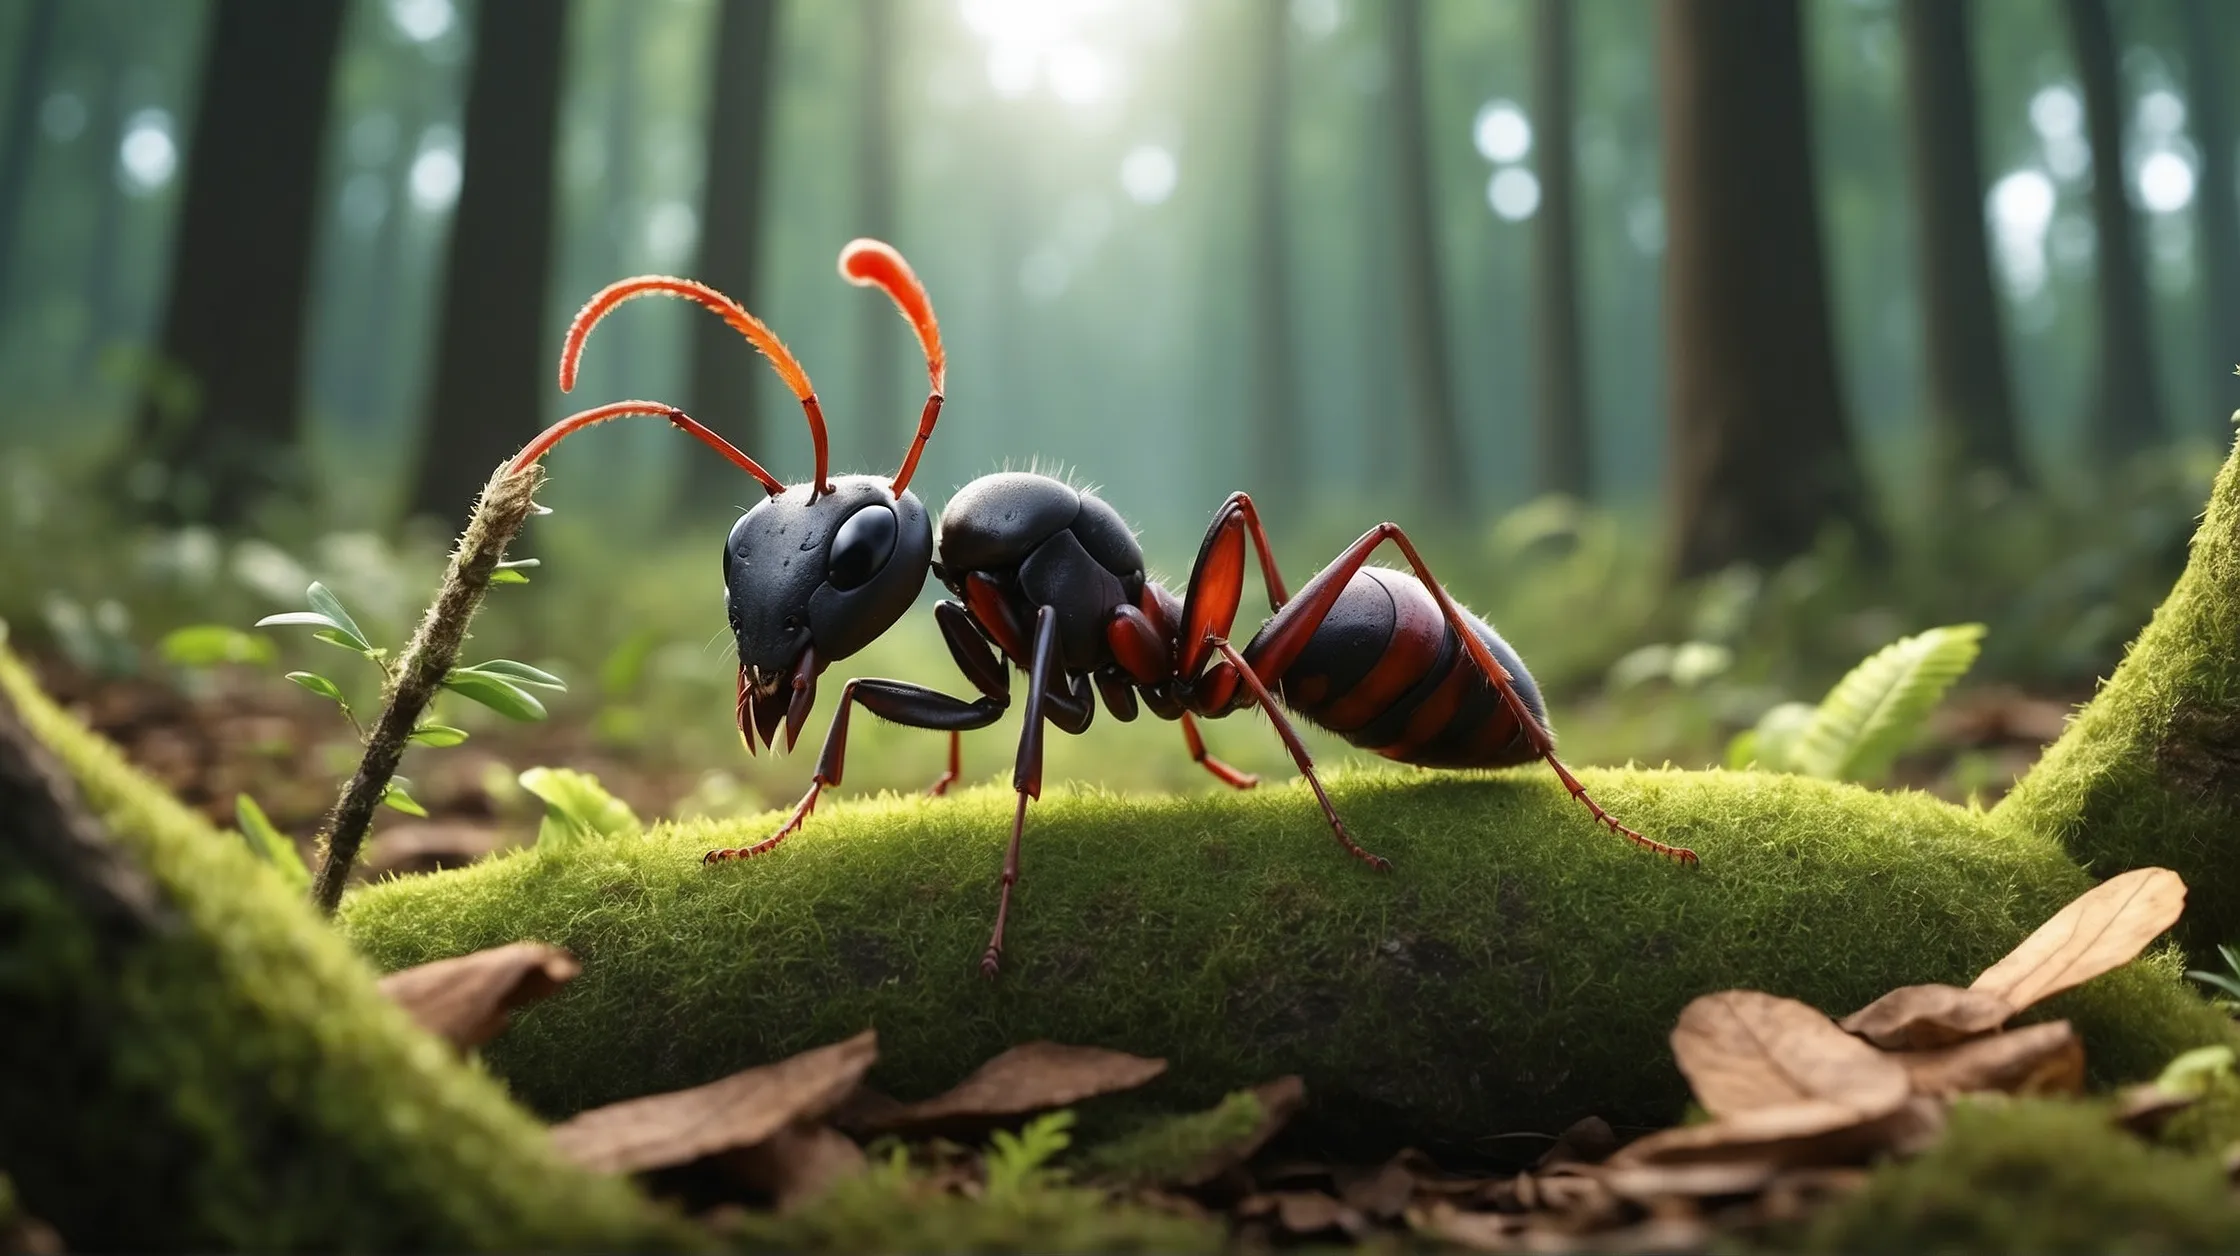 एक मेहनती चींटी की हिंदी में कहानी The Story of a Hardworking Ant In Hindi